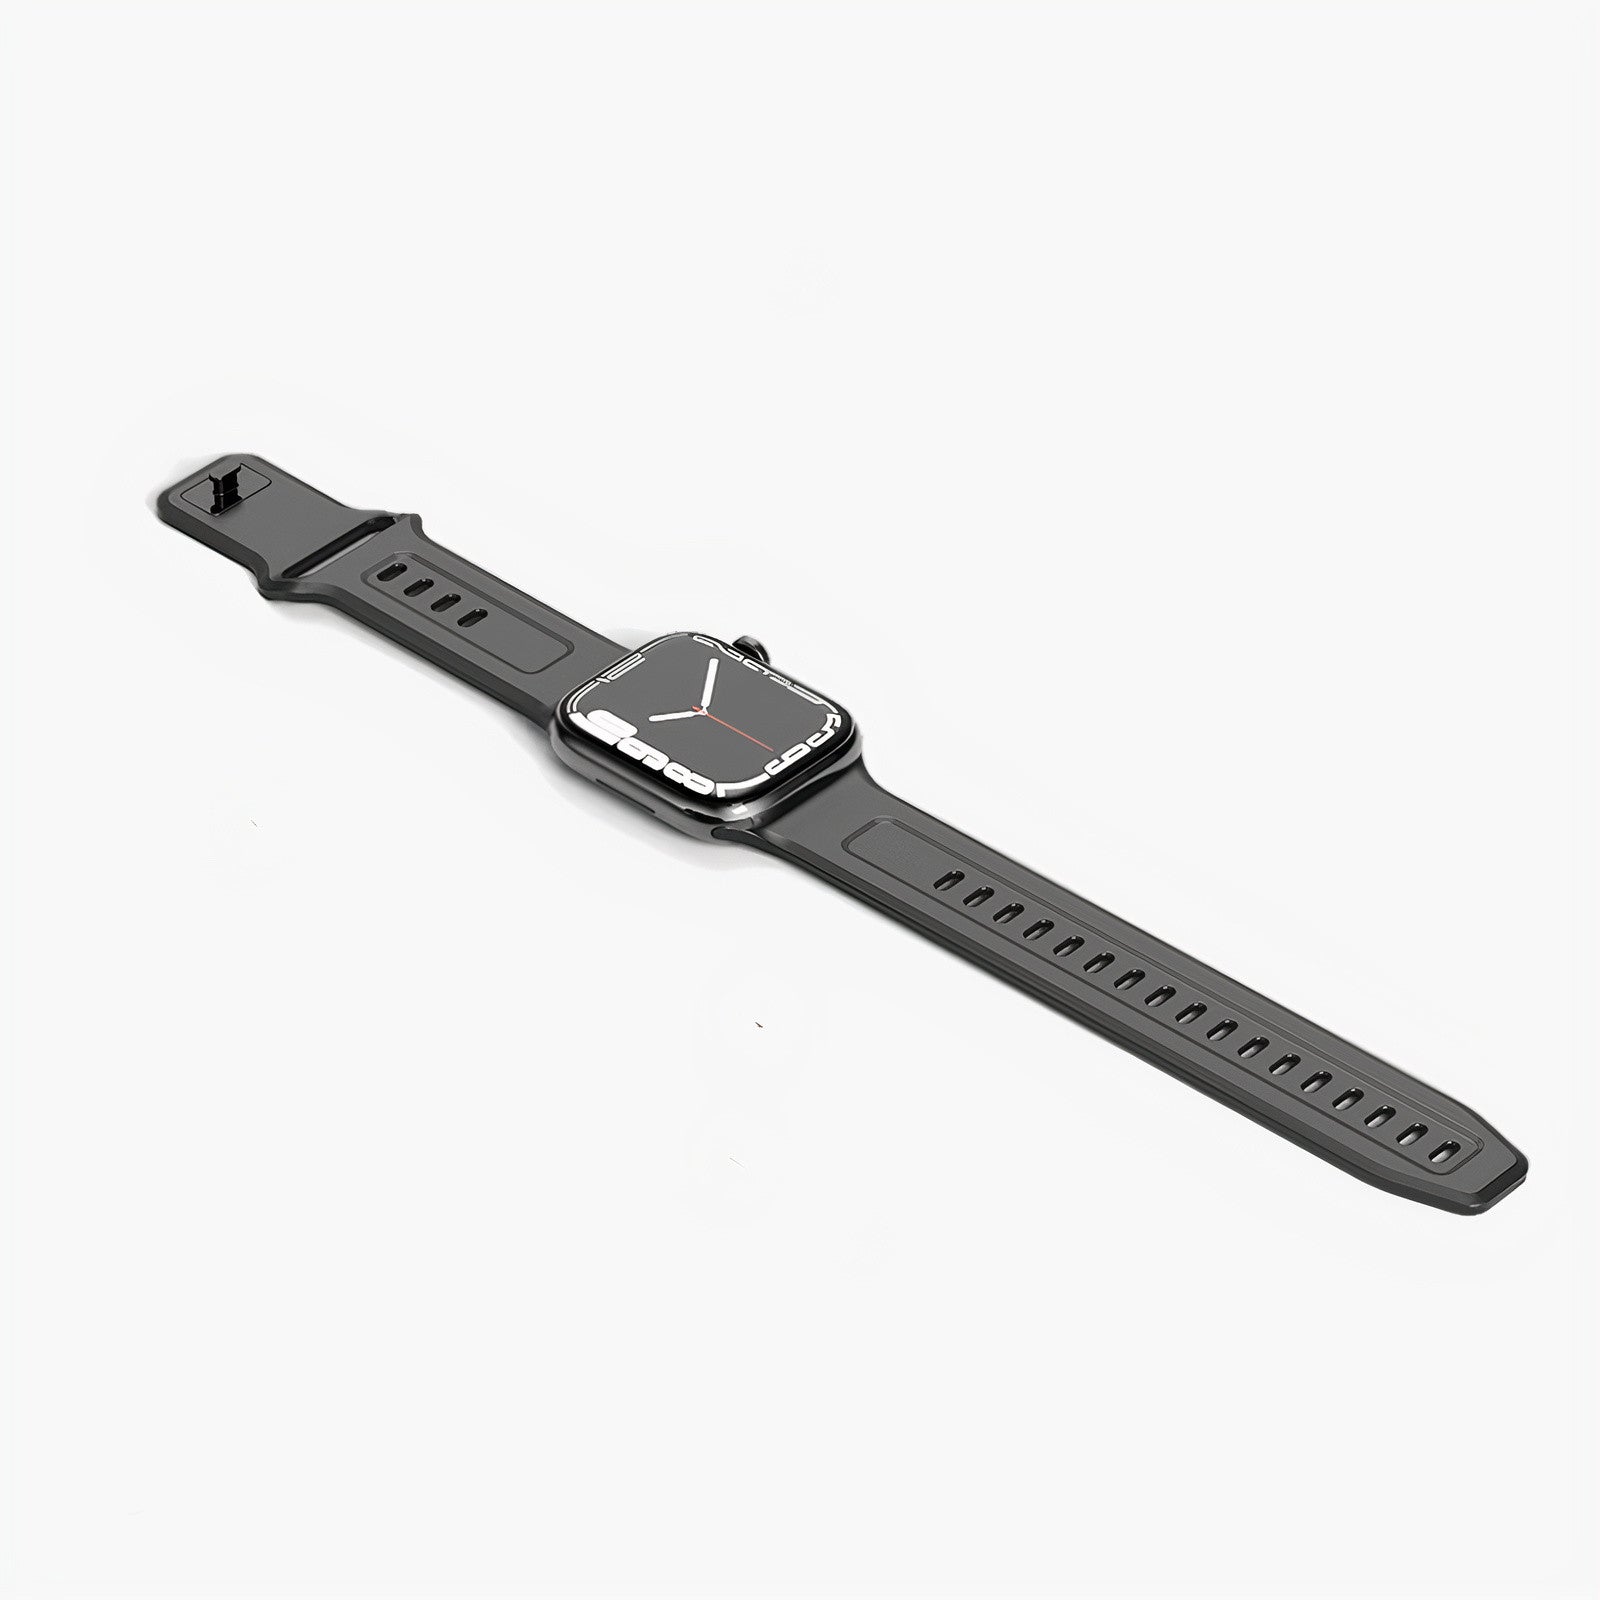 Bracelet Apple Watch Motion Black